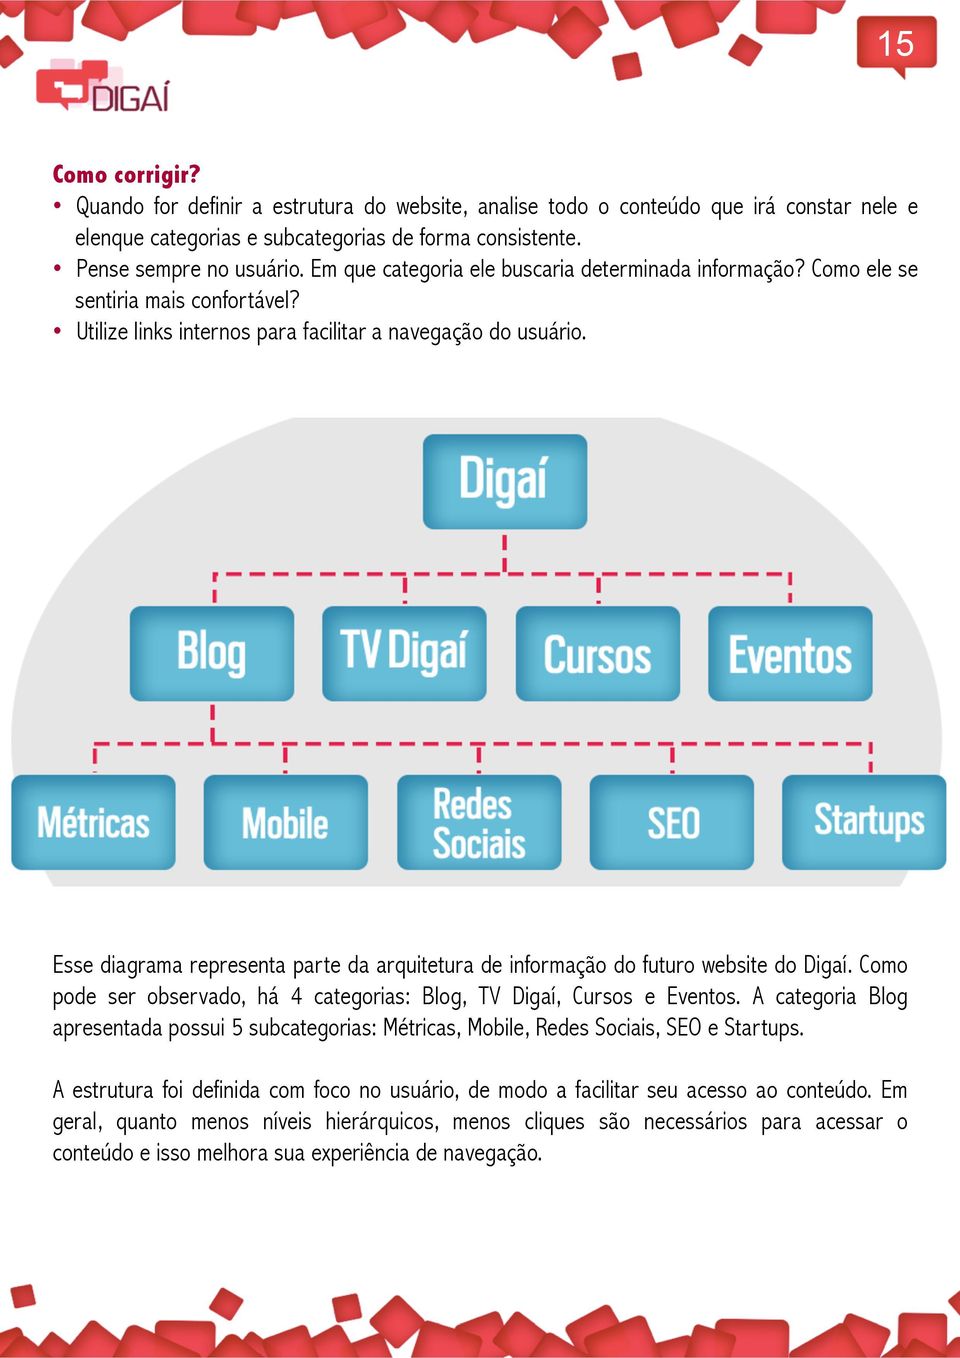 Esse diagrama representa parte da arquitetura de informação do futuro website do Digaí. Como pode ser observado, há 4 categorias: Blog, TV Digaí, Cursos e Eventos.